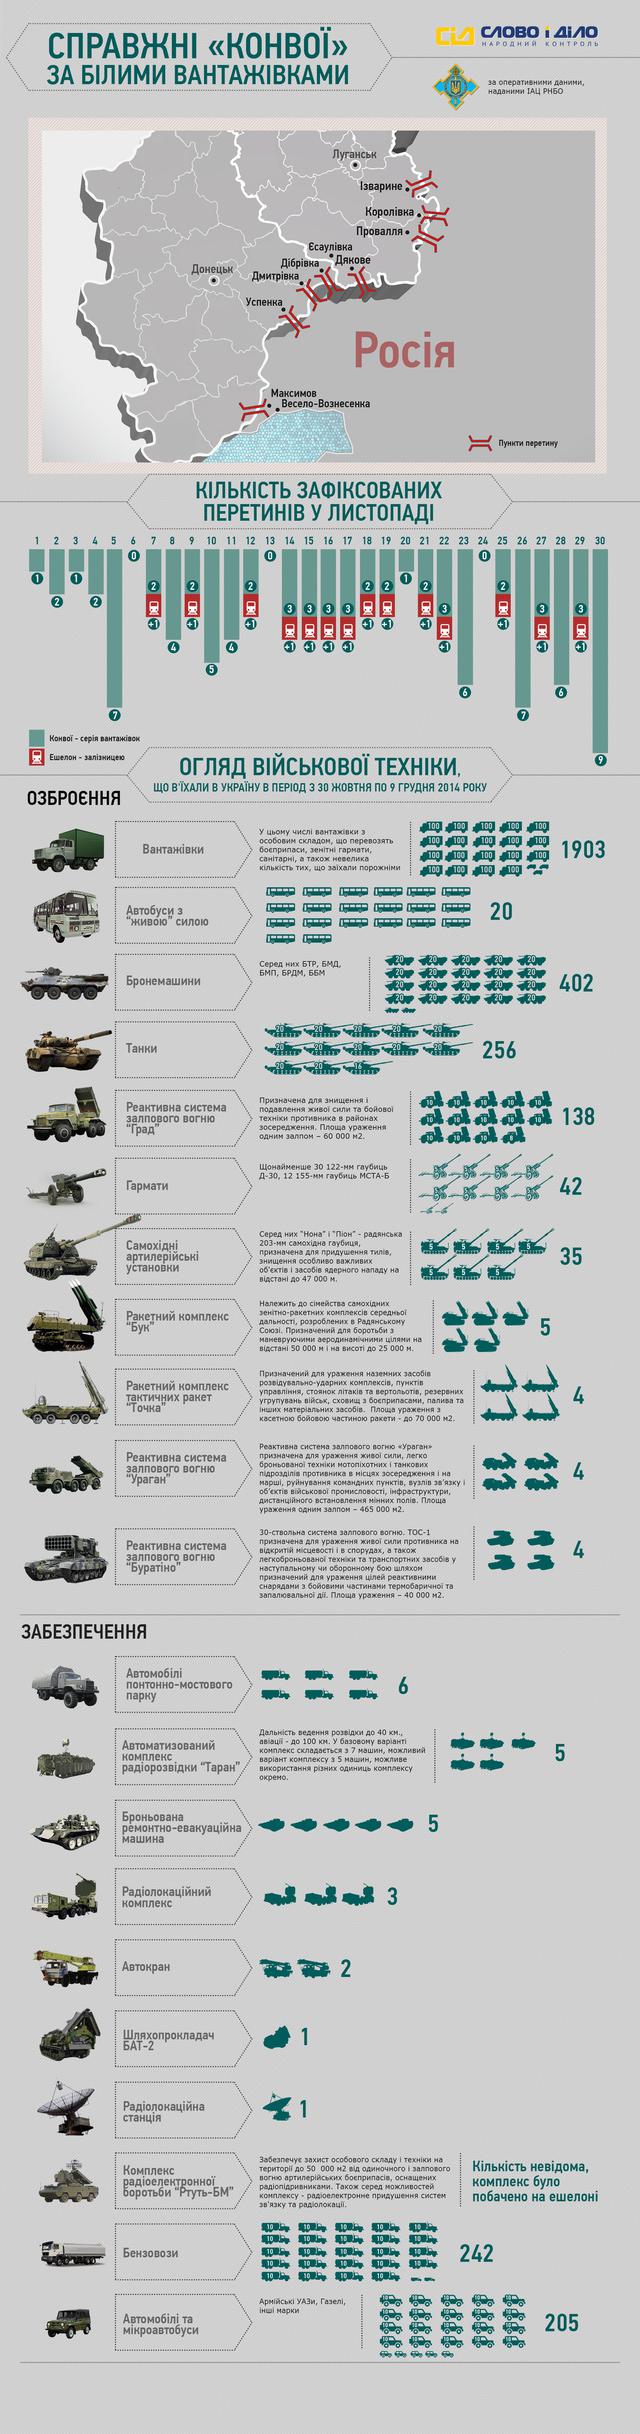 За полтора месяца РФ перебросила террористам на Донбасс 402 бронемашины, 256 танков, 138 Градов, 5 Буков и 4 Точки-У, - СНБО (Инфографика)